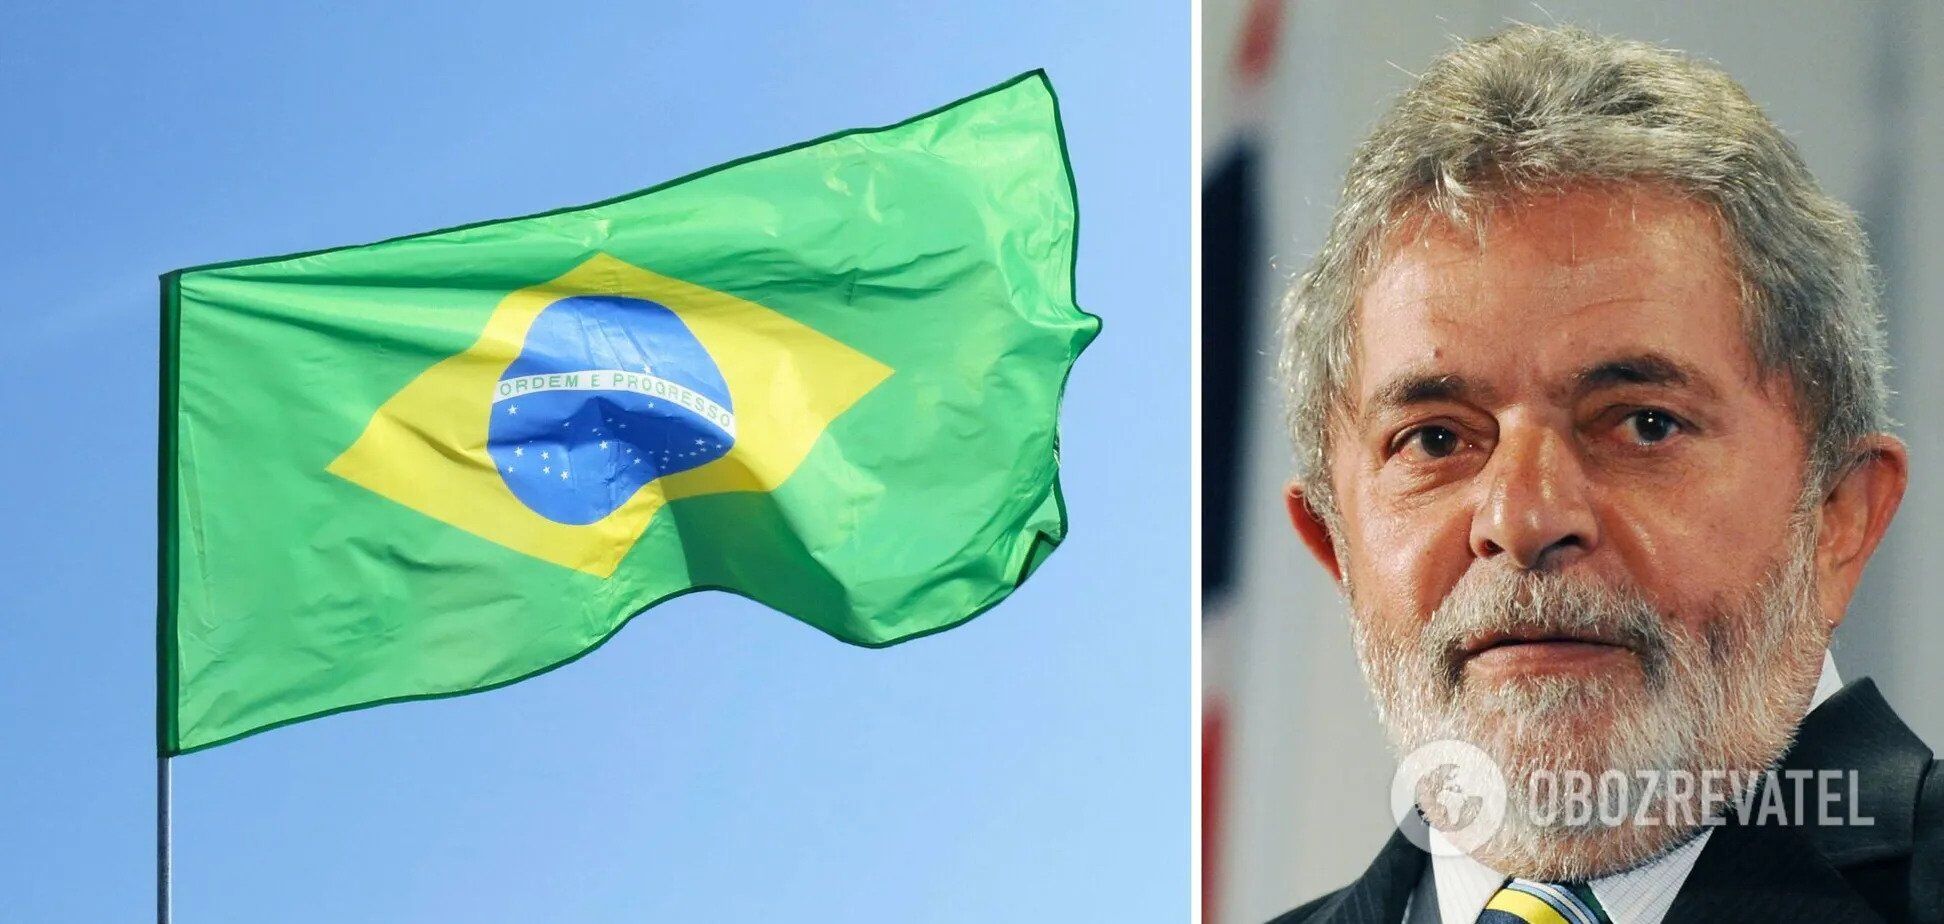 "Миру нужен покой": президент Бразилии предложил Украине отдать Крым России для прекращения войны